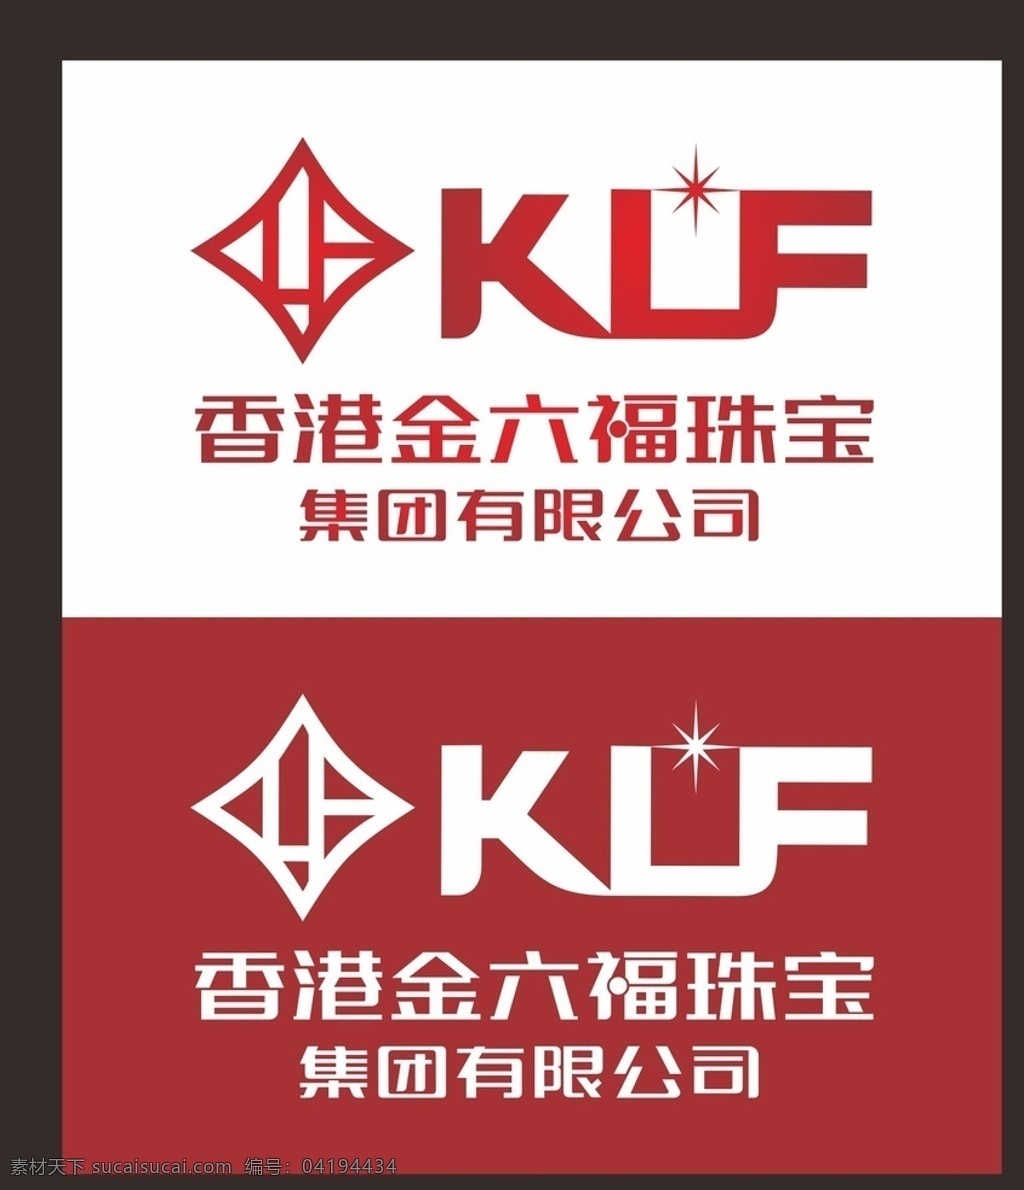 金六福 金六福标志 金 六 福 logo 金六福商标 金六福珠宝 香港金六福 klf logo设计